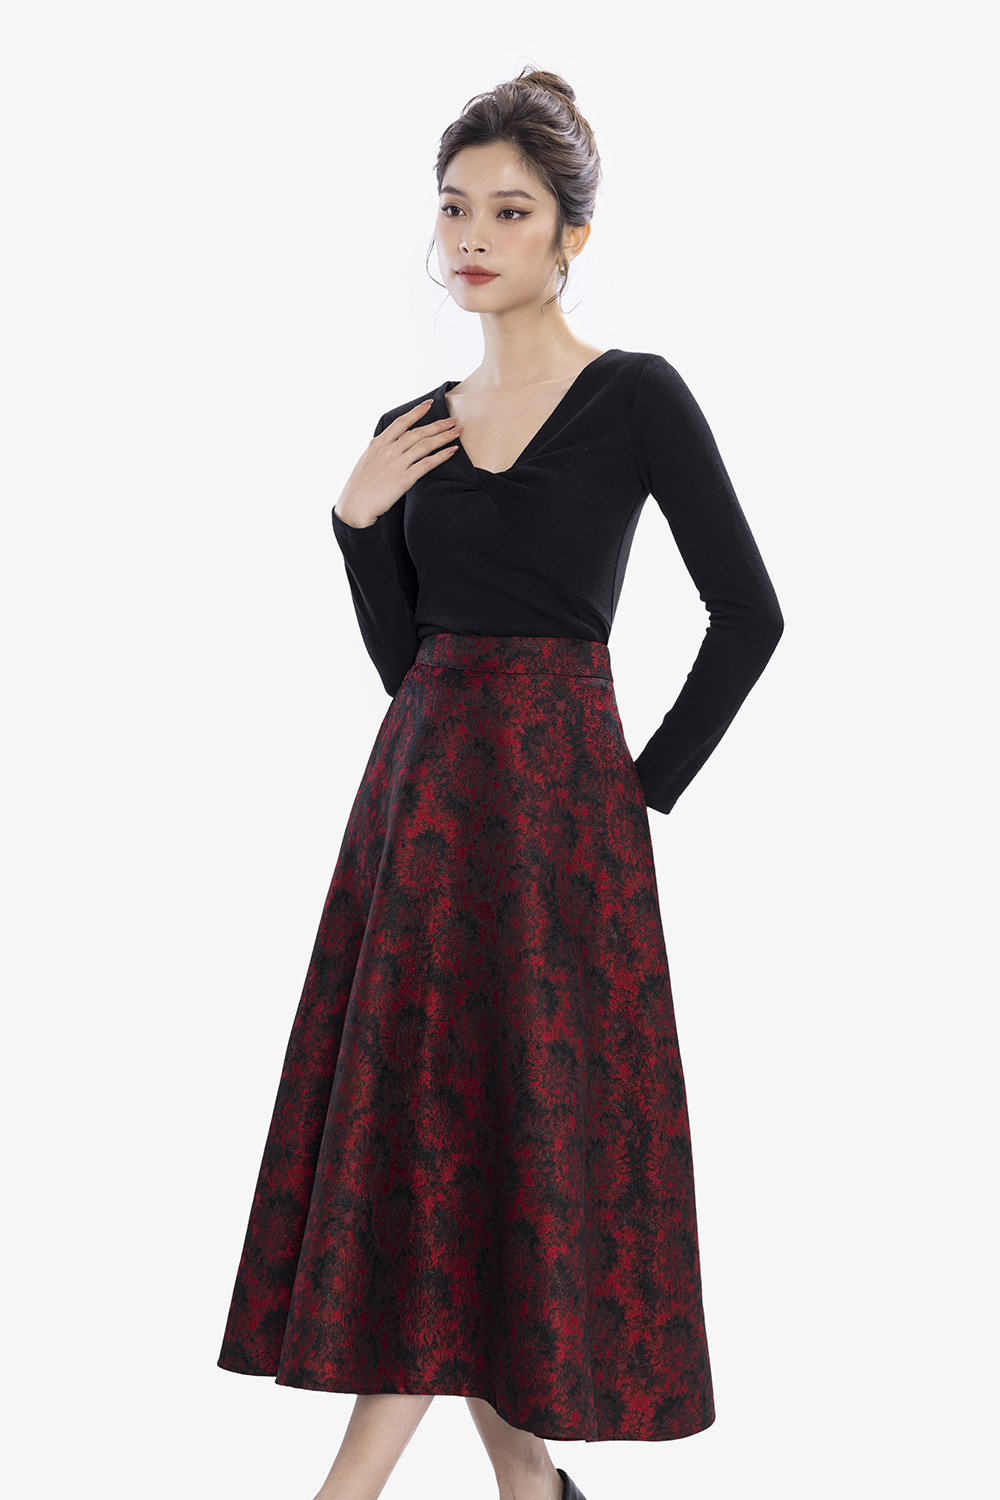 KIOBI - Chân váy Short Laluna form mini rã 7 mảnh, dáng váy ôm trên xòe  dưới, eo lưng cao, vải cotton bố đỏ - KIV20121DO - Chân váy | ThờiTrangNữ.vn